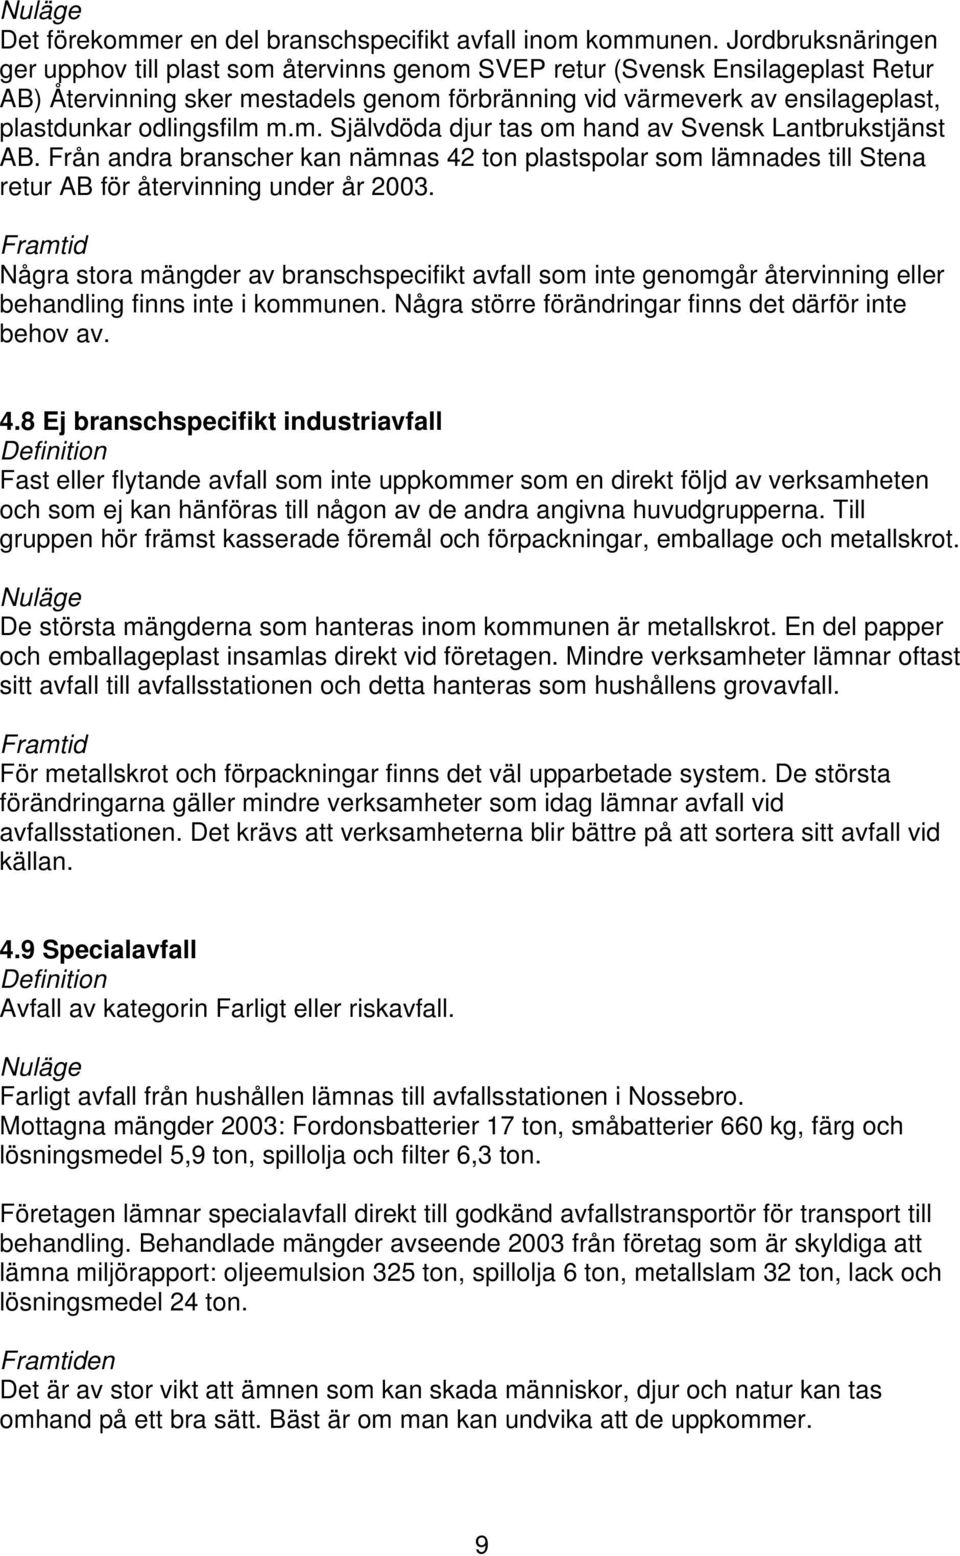 odlingsfilm m.m. Självdöda djur tas om hand av Svensk Lantbrukstjänst AB. Från andra branscher kan nämnas 42 ton plastspolar som lämnades till Stena retur AB för återvinning under år 2003.